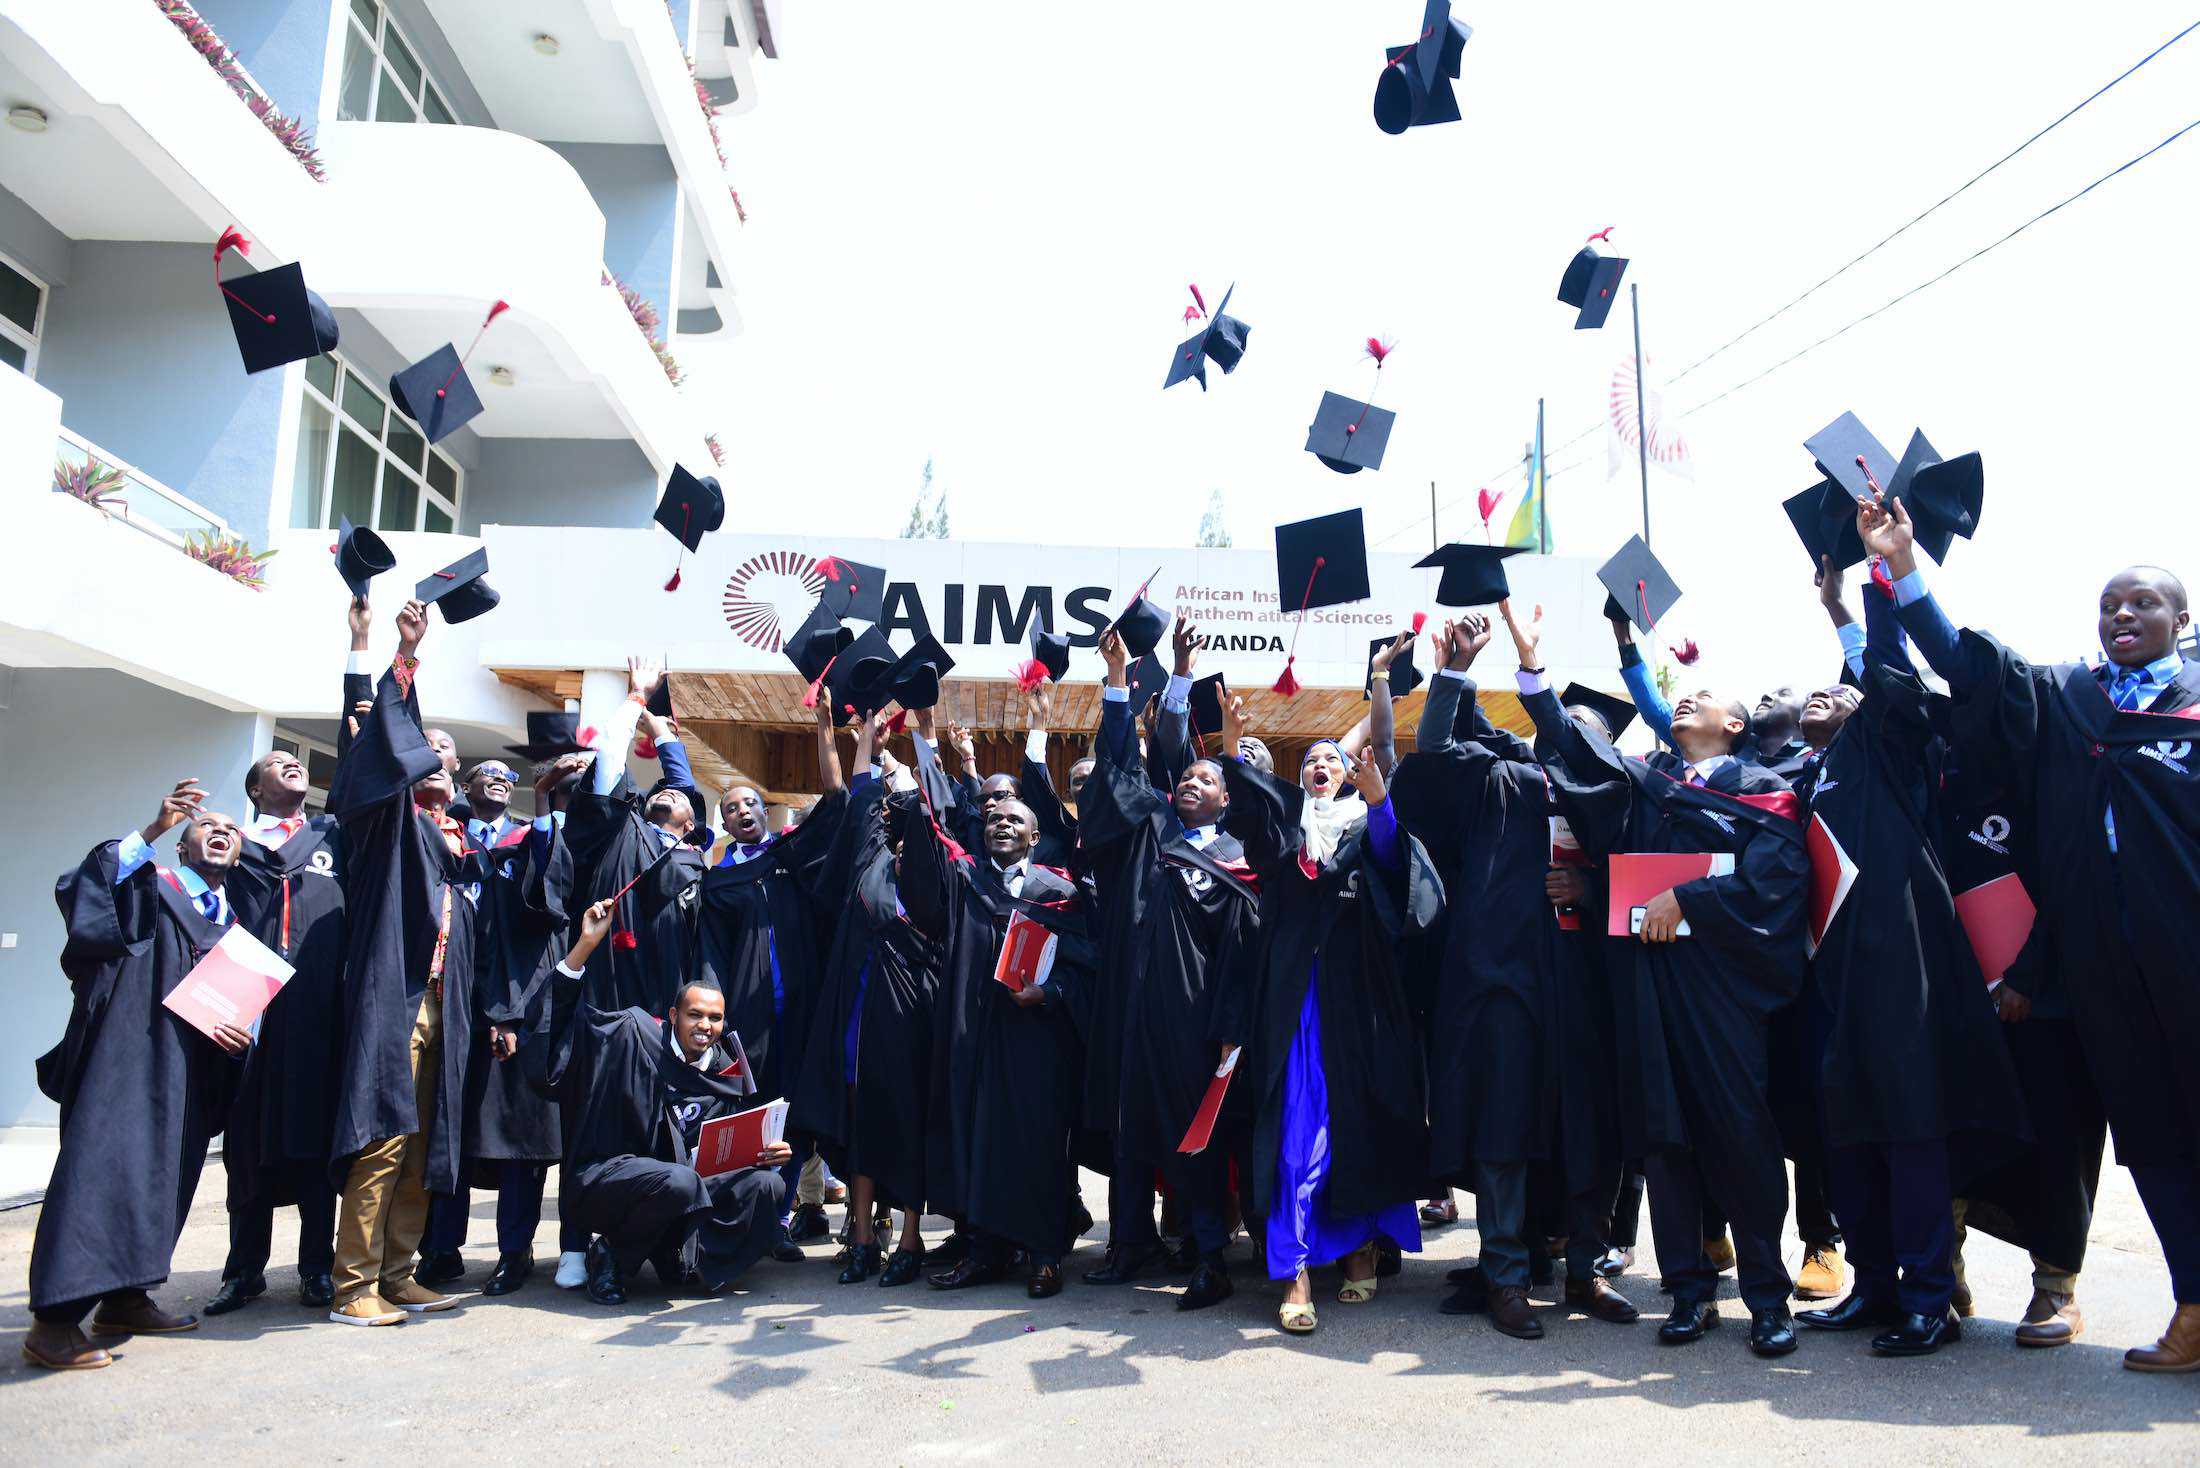 AIMS Rwanda – We believe the next Einstein will be African